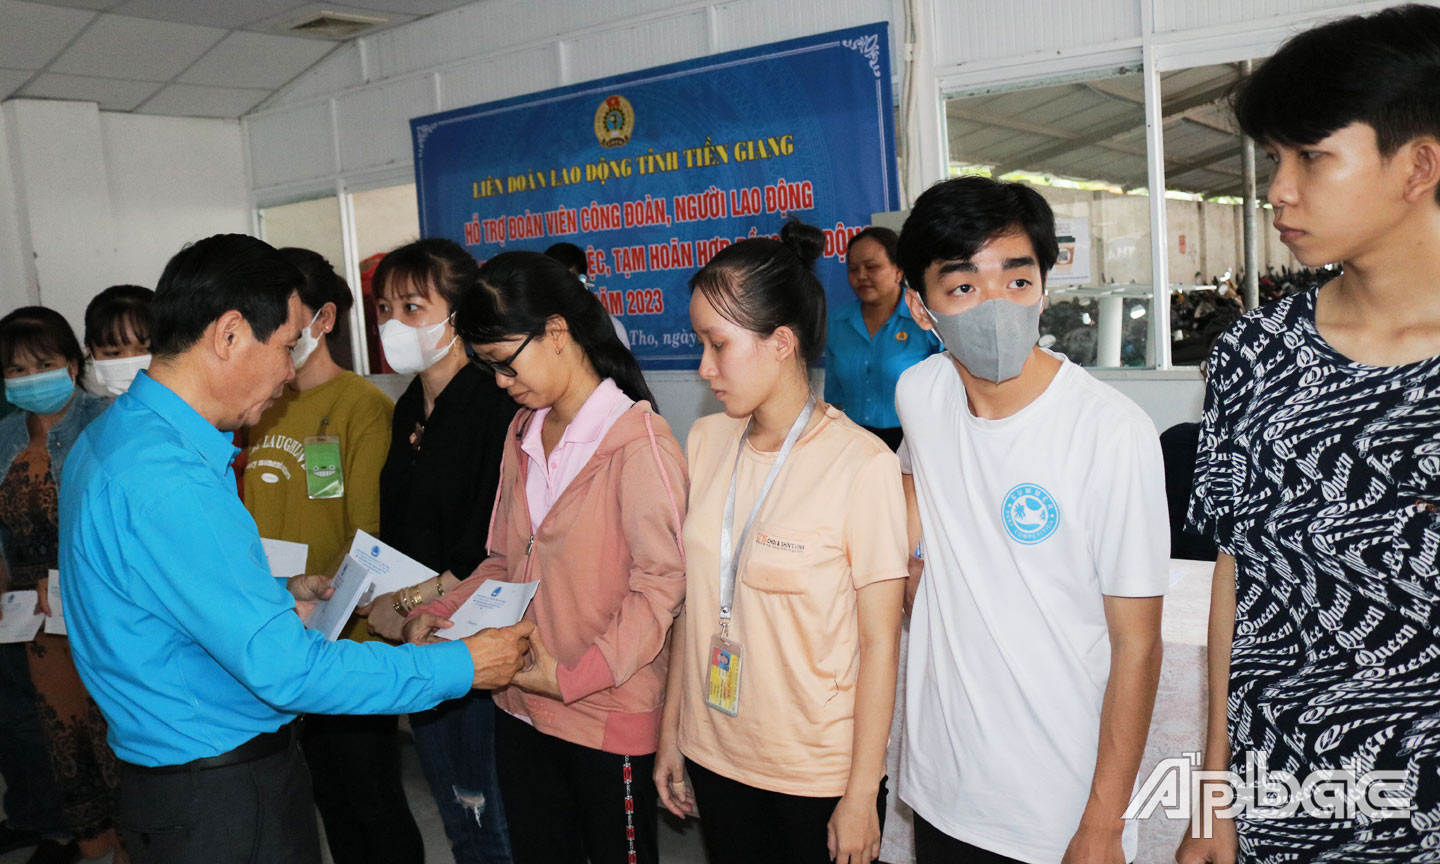  Chủ tịch LĐLĐ tỉnh Lê Minh Hùng trao hỗ trợ cho công đoàn viên, công nhân gặp khó khăn do bị hoãn hợp đồng, giảm giờ làm.